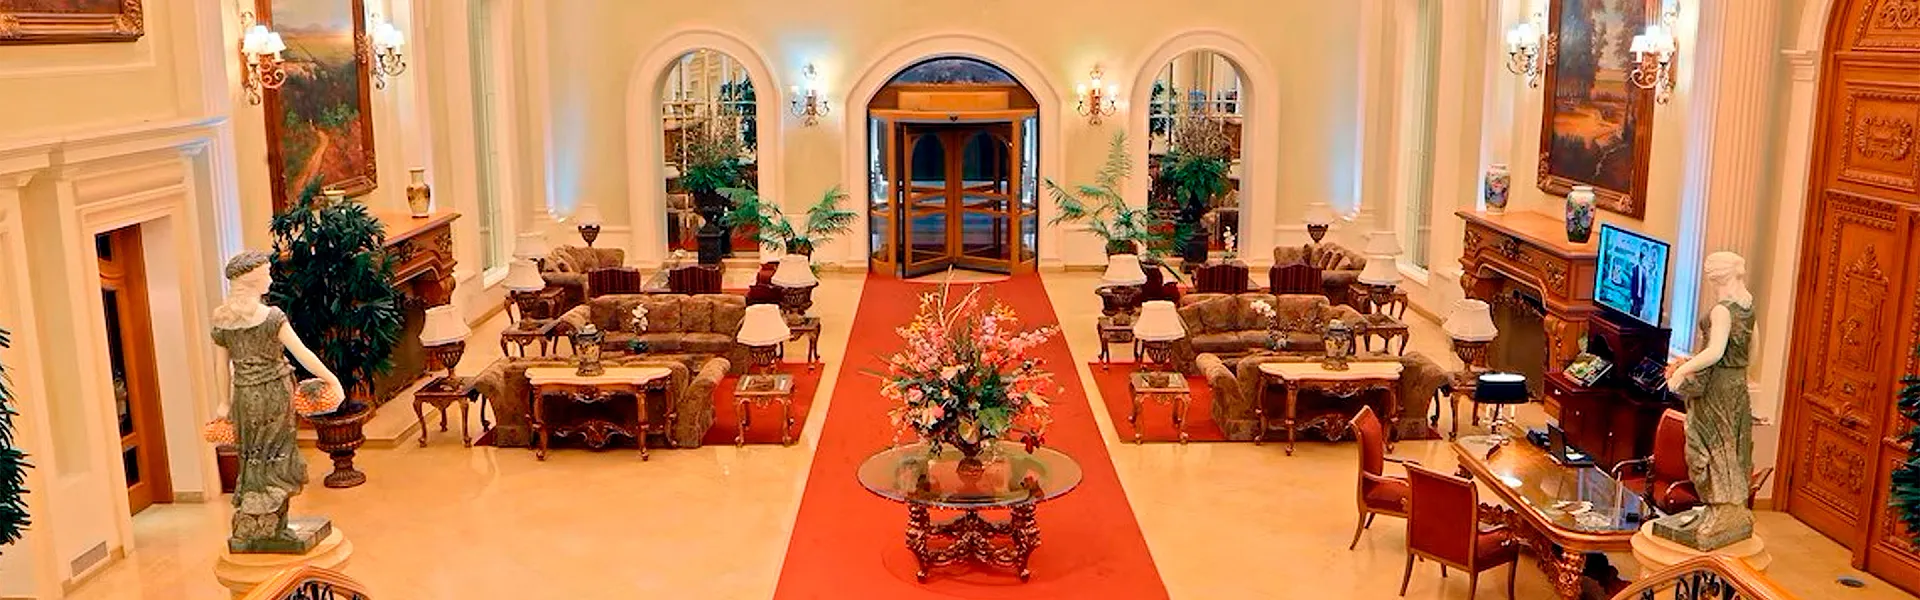 Hotel Real Hacienda Santo Tomás Villa Victoria, Estado de México